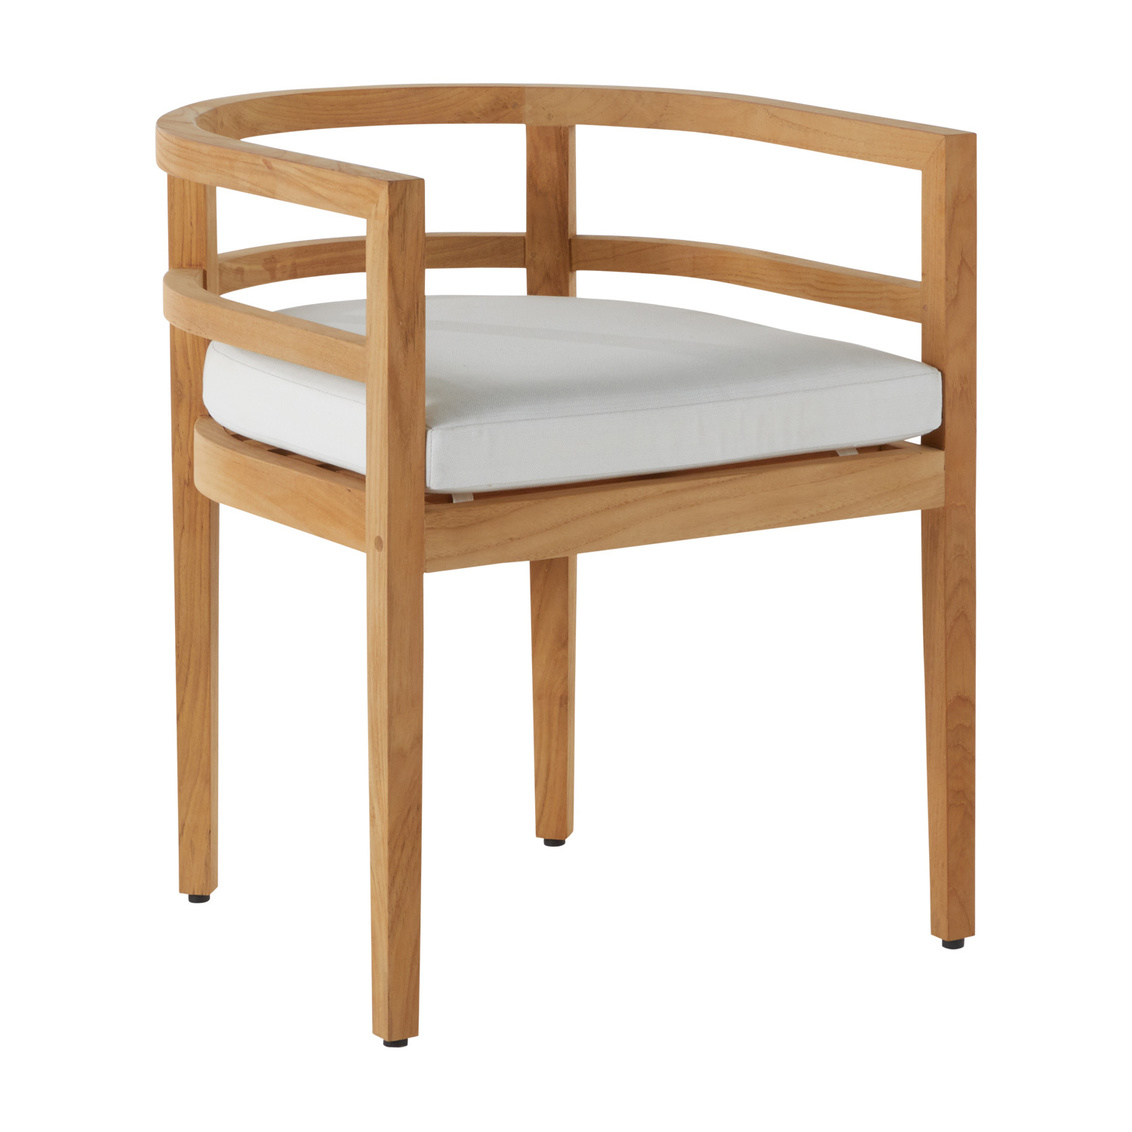 santa barbara teak barrel back arm chair in natural teak – frame only product image